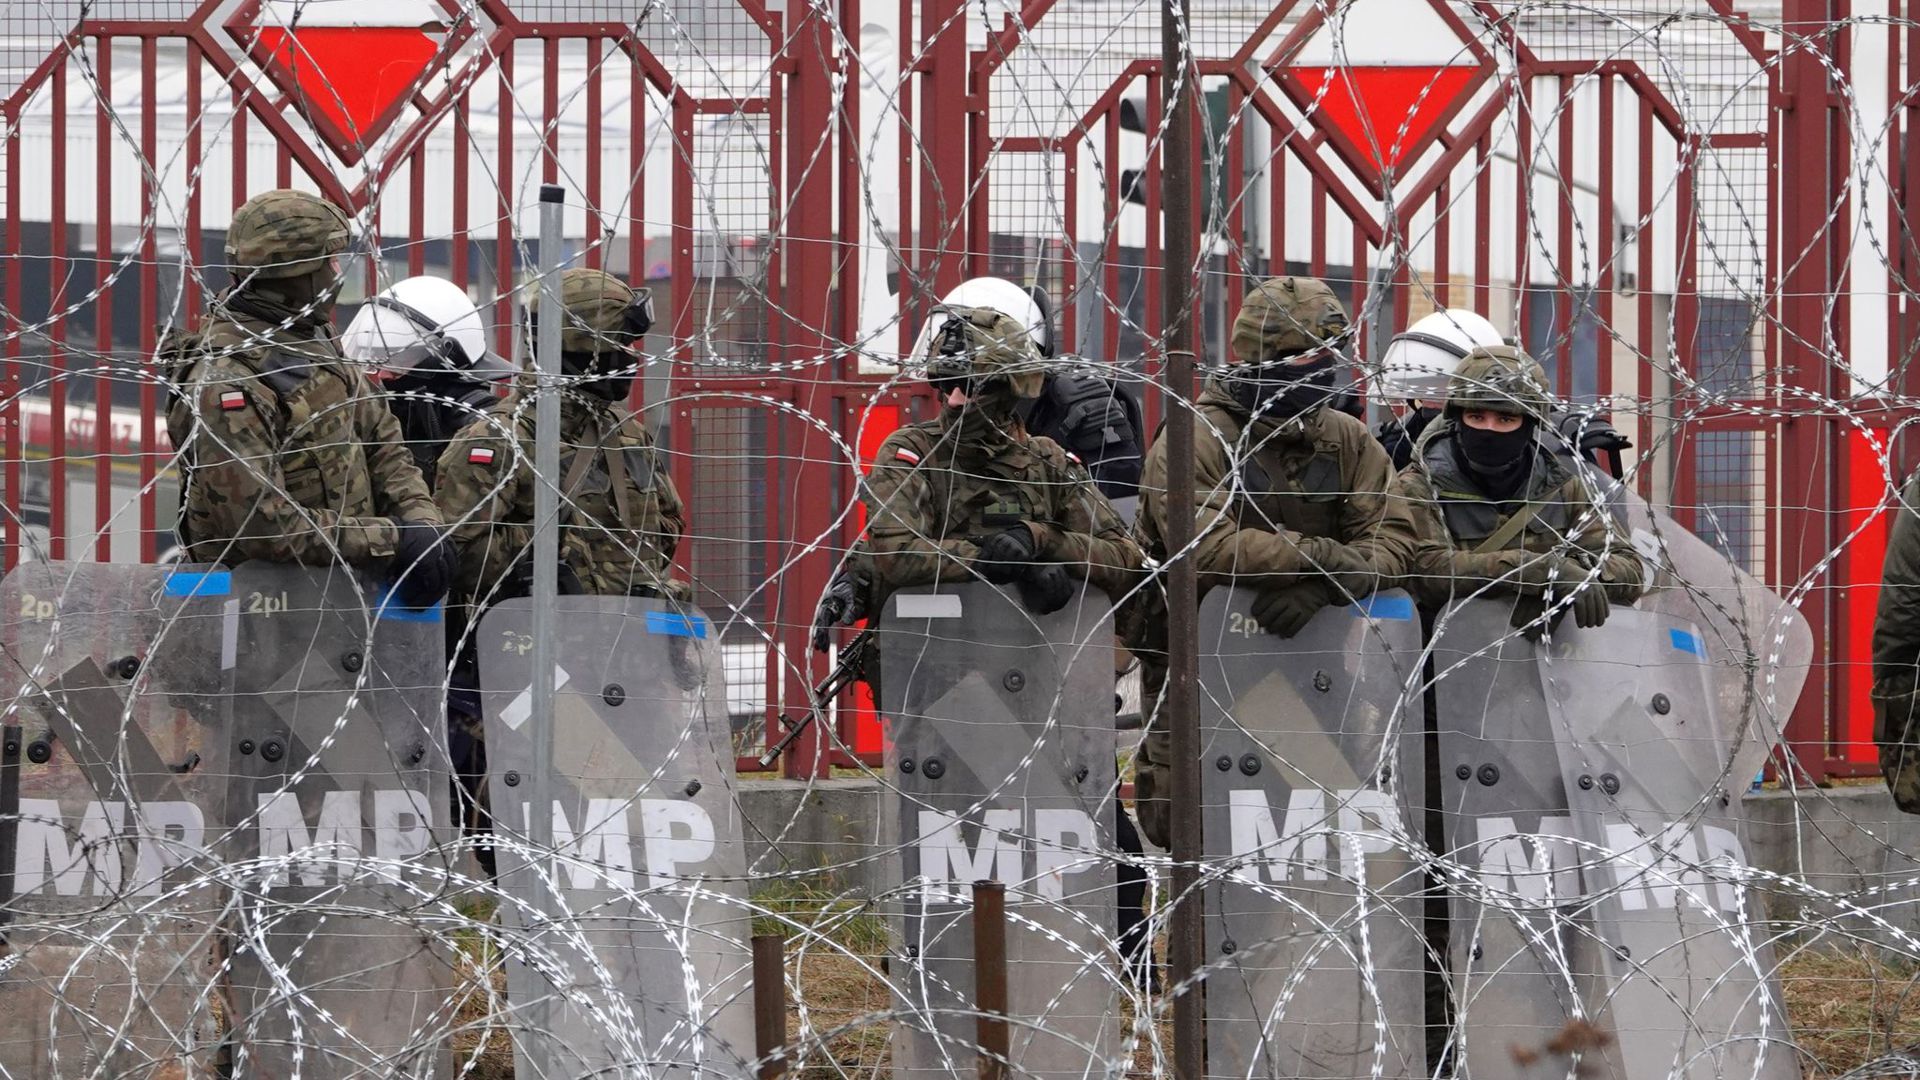 Polnische Sicherheitskräfte stehen hinter dem Grenzzaun am Grenzübergang Brusgi (Belarus) und Kuznica (Polen).